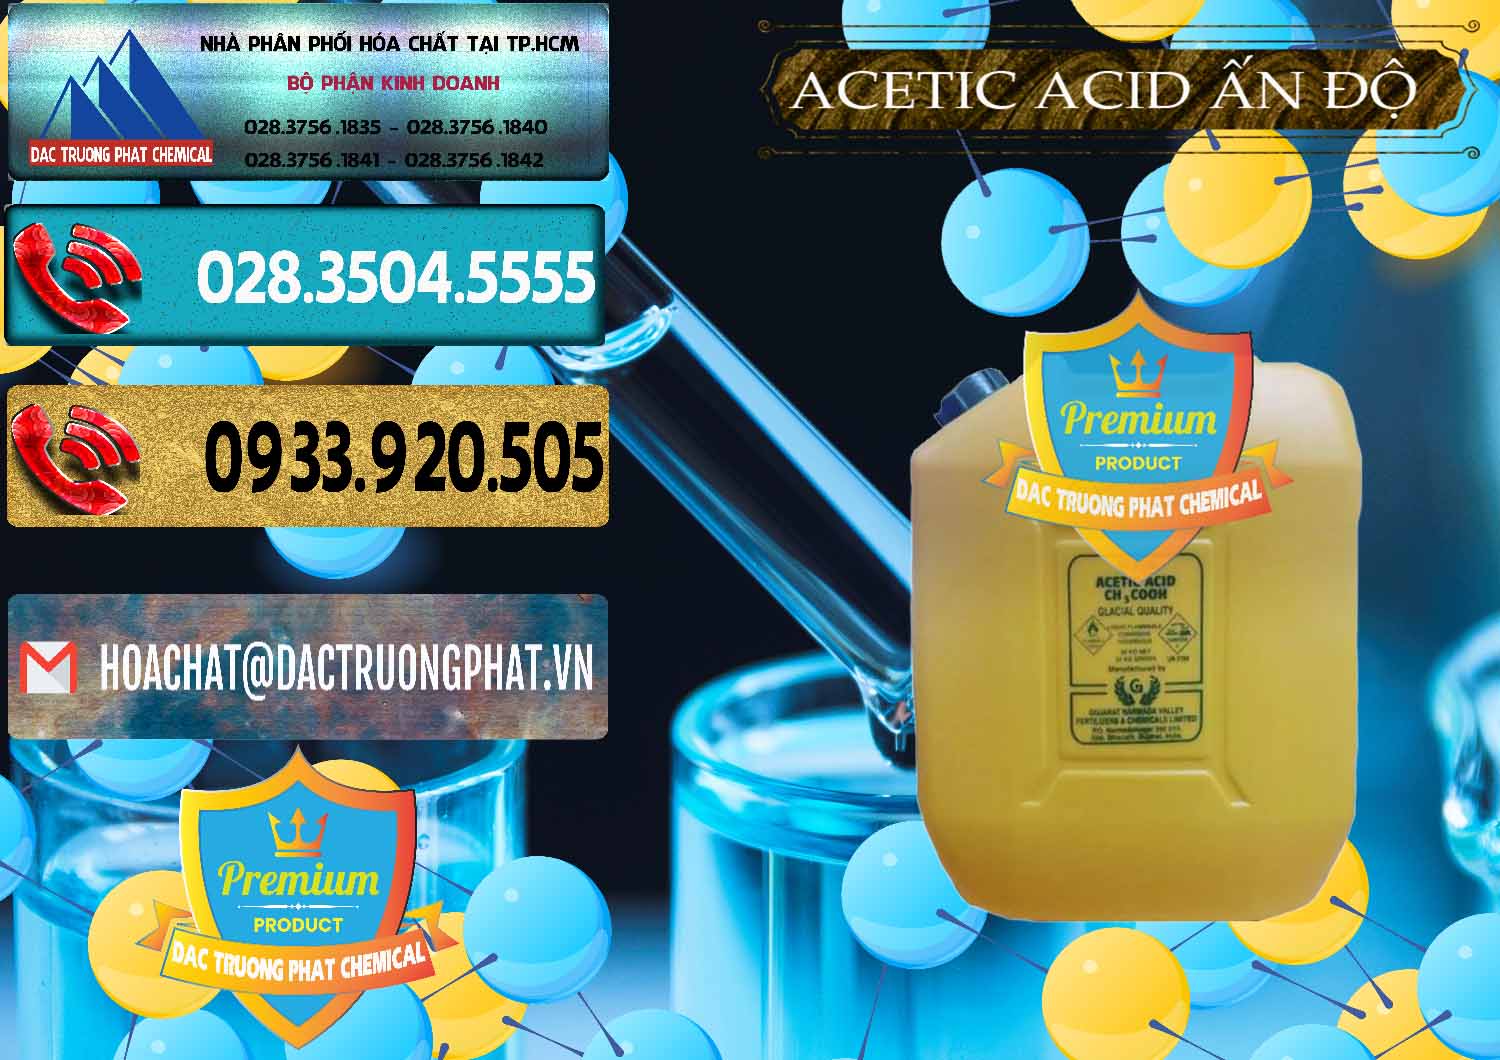 Công ty chuyên bán và cung ứng Acetic Acid – Axit Acetic Ấn Độ India - 0359 - Cty cung cấp & kinh doanh hóa chất tại TP.HCM - hoachatdetnhuom.com